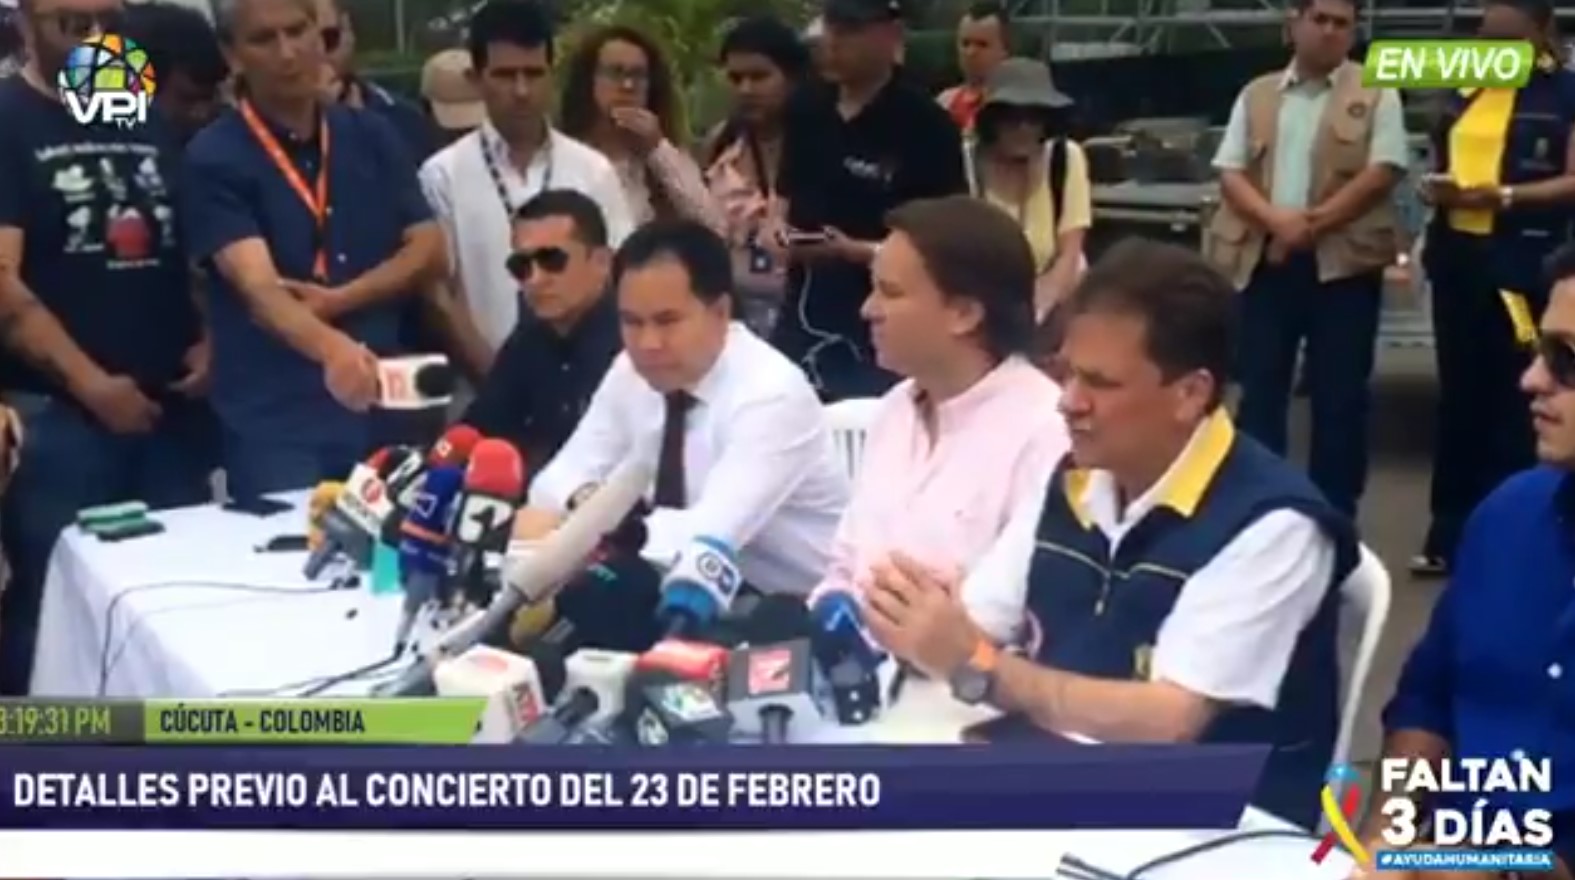 Autoridades de Colombia brindan detalles sobre los preparativos del Venezuela Aid Live (VIDEO)